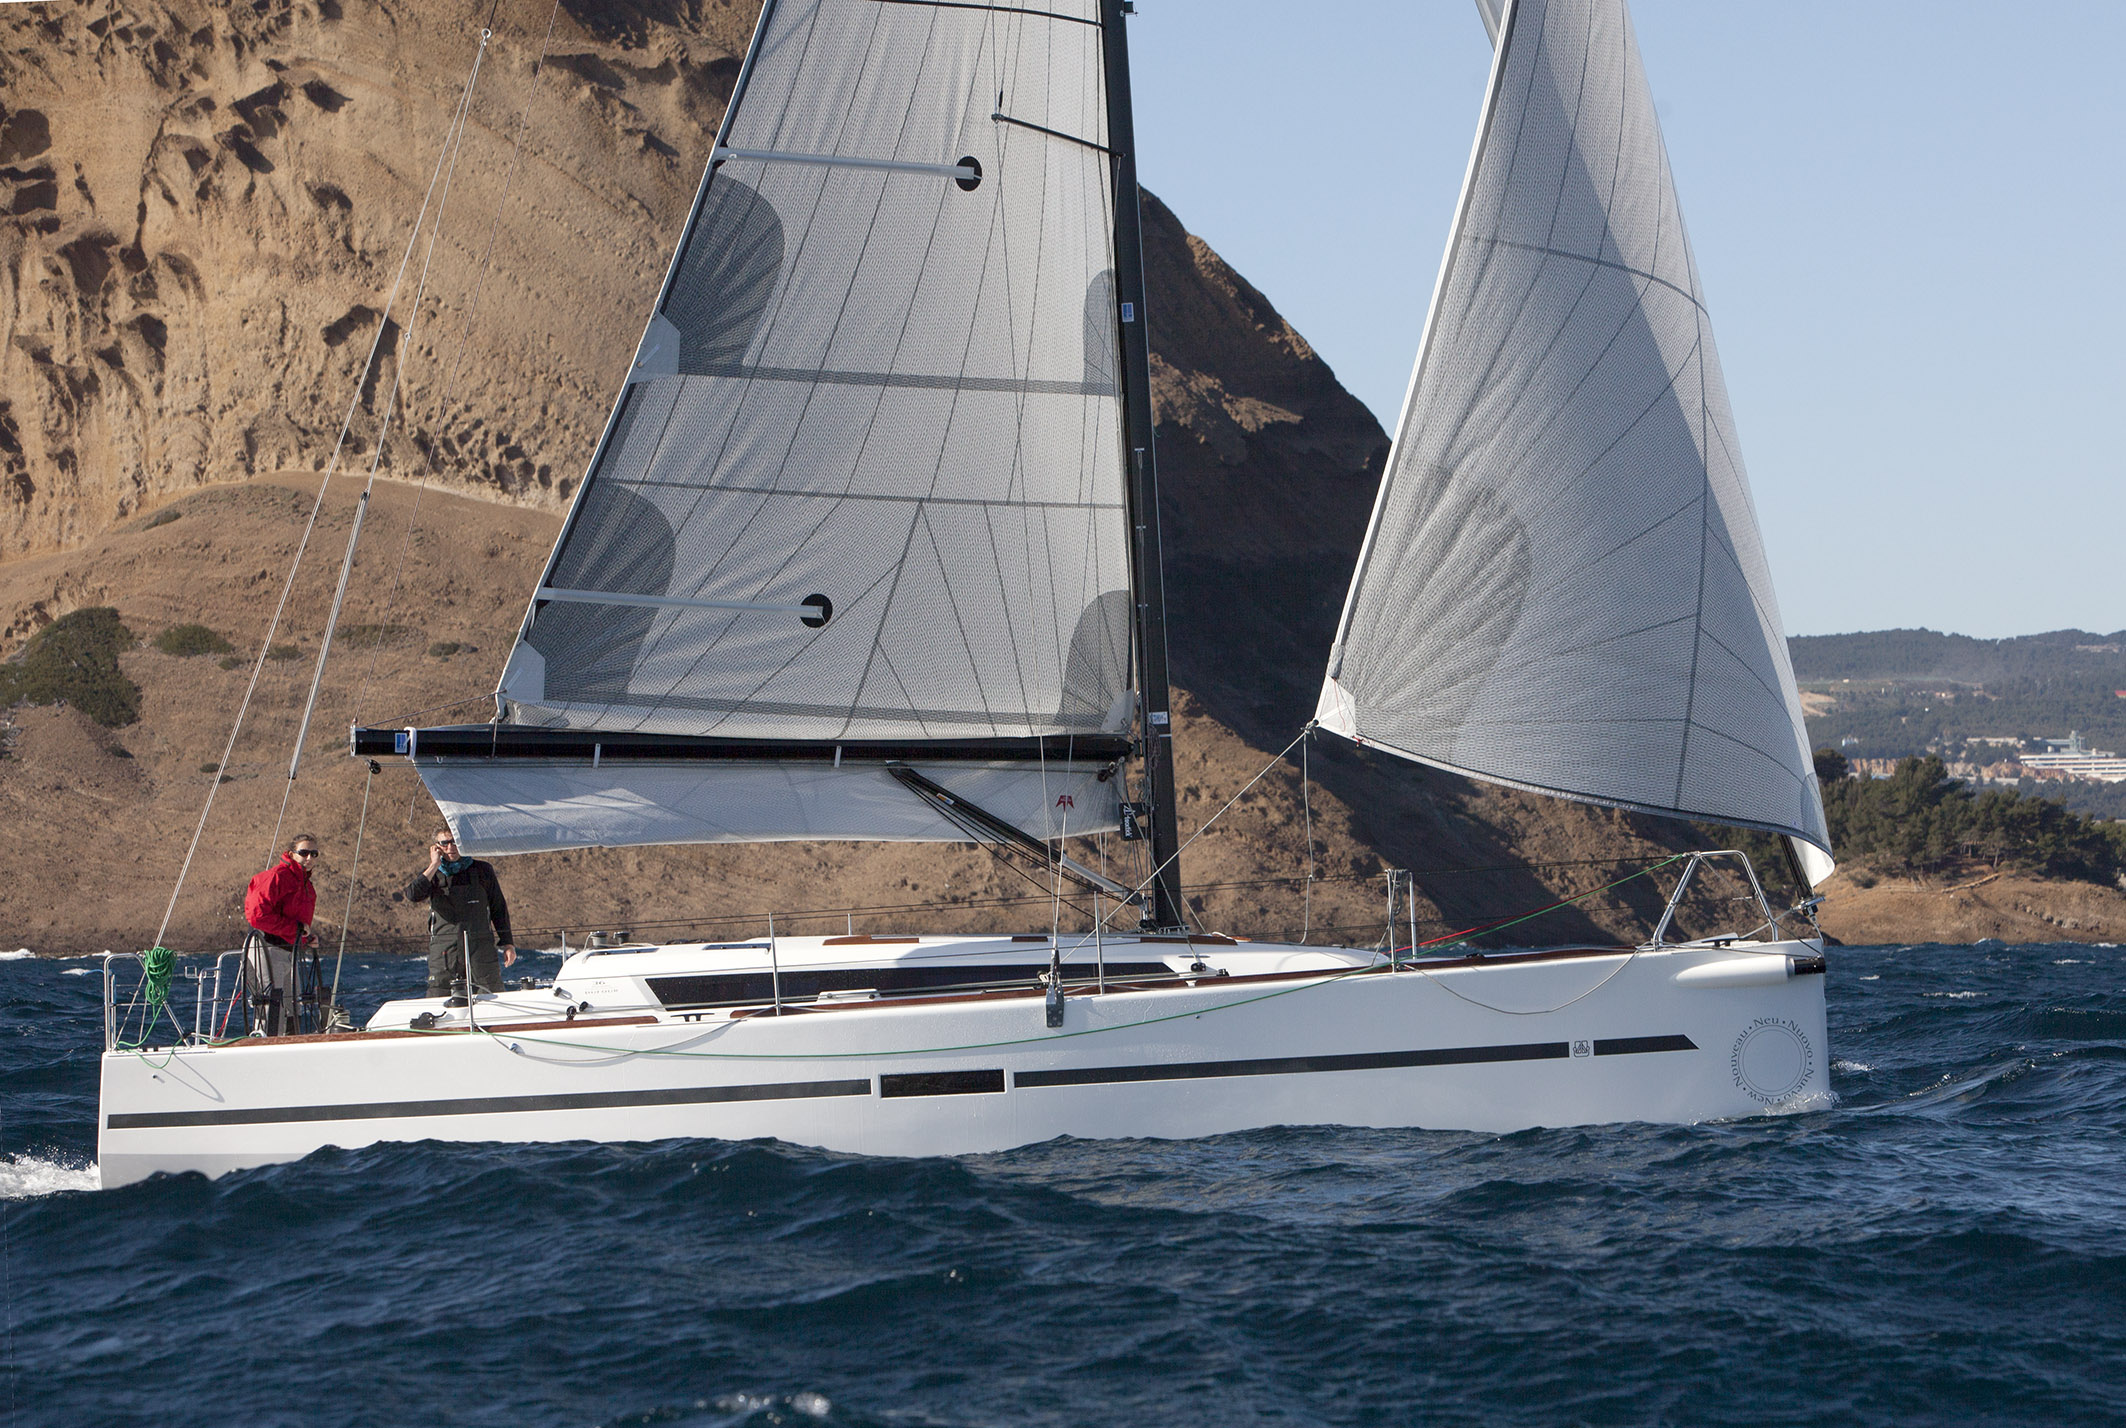 Dufour 360 Performance blev Årets Båd i Europa, valgt af bådblade i Europa, herunder BådNyt.